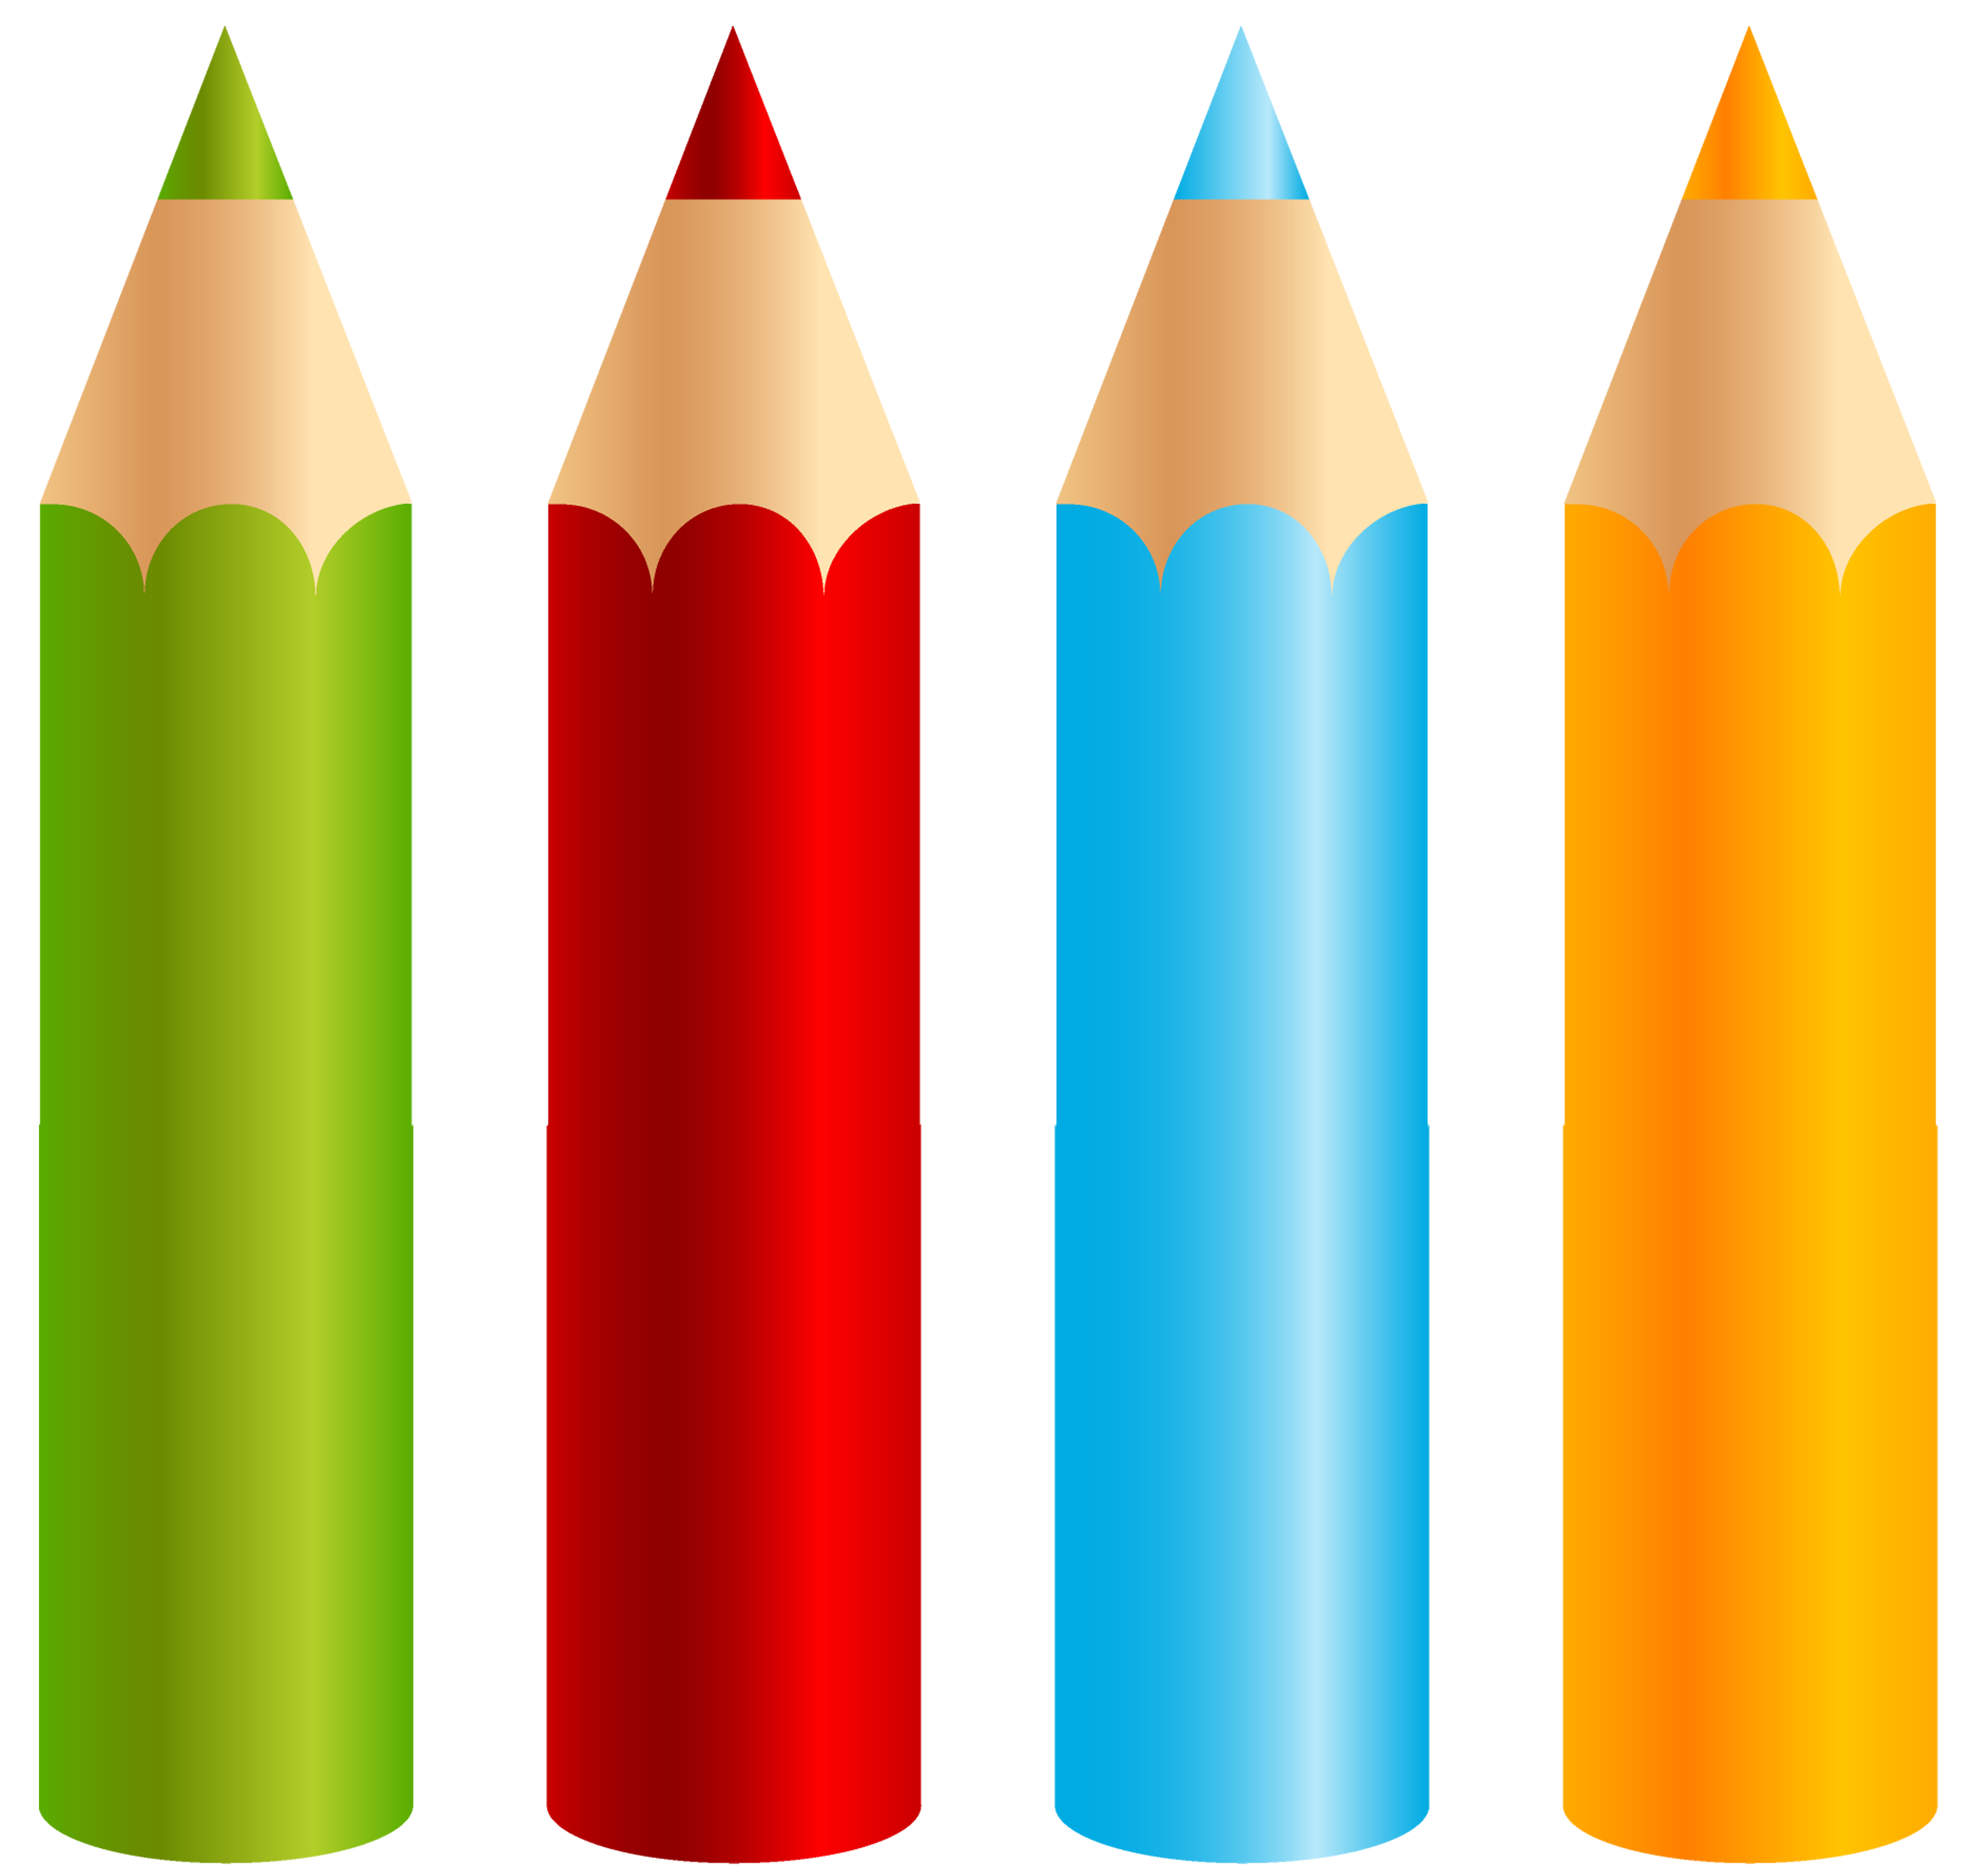 Картинка карандаш для детей. Карандаш на белом фоне. Карандаши цветные. Малыши карандаши. Веселый карандаш.